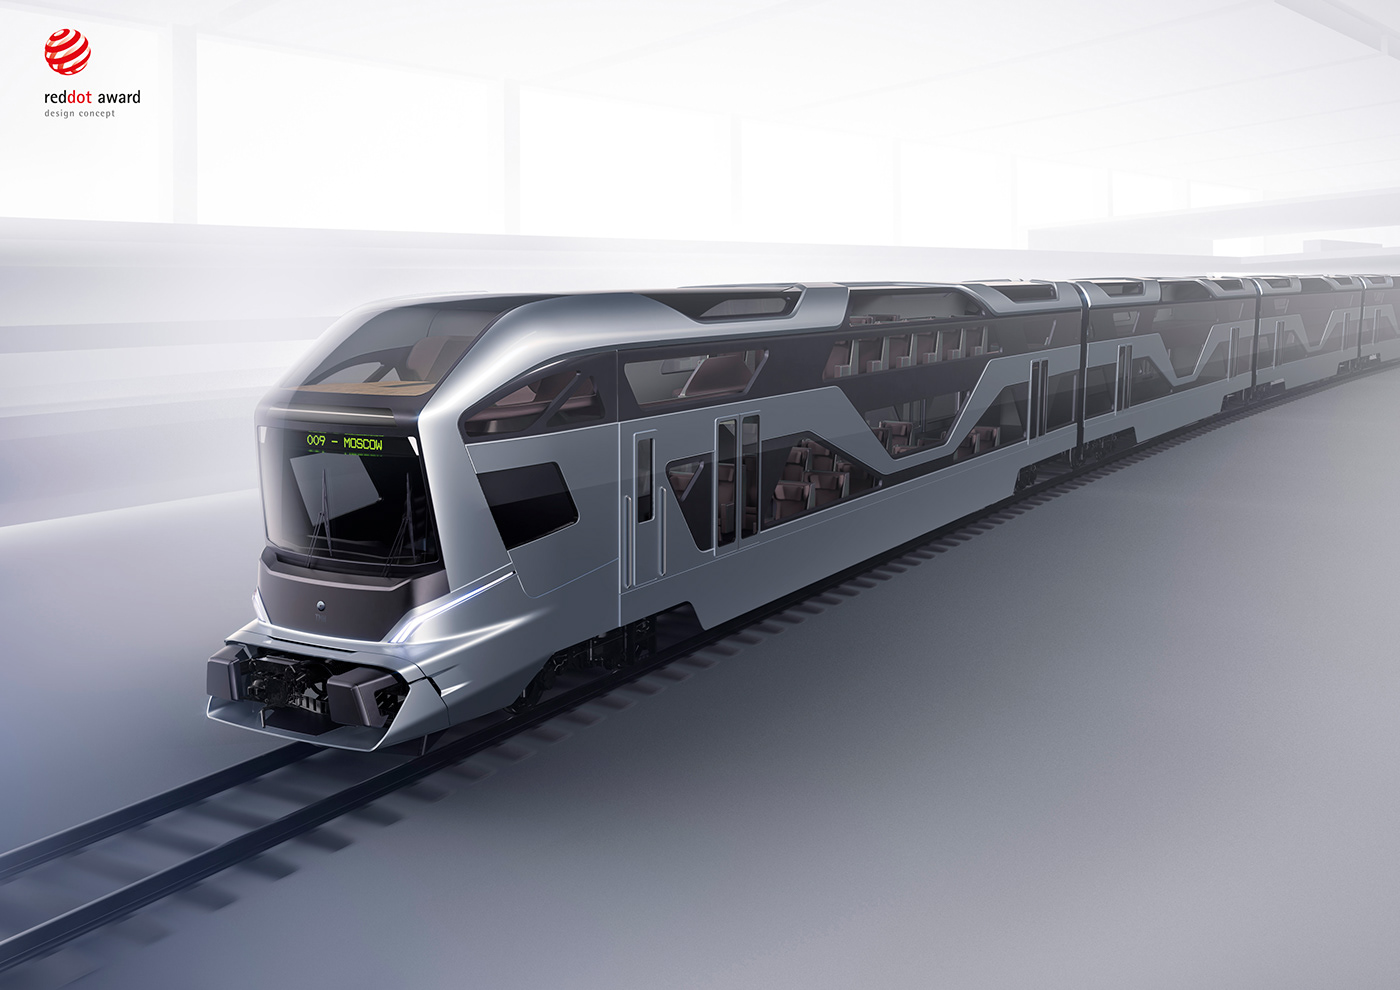 concept Mobility Design panoramic red dot design reddot reddot design award train Transportation Design winner